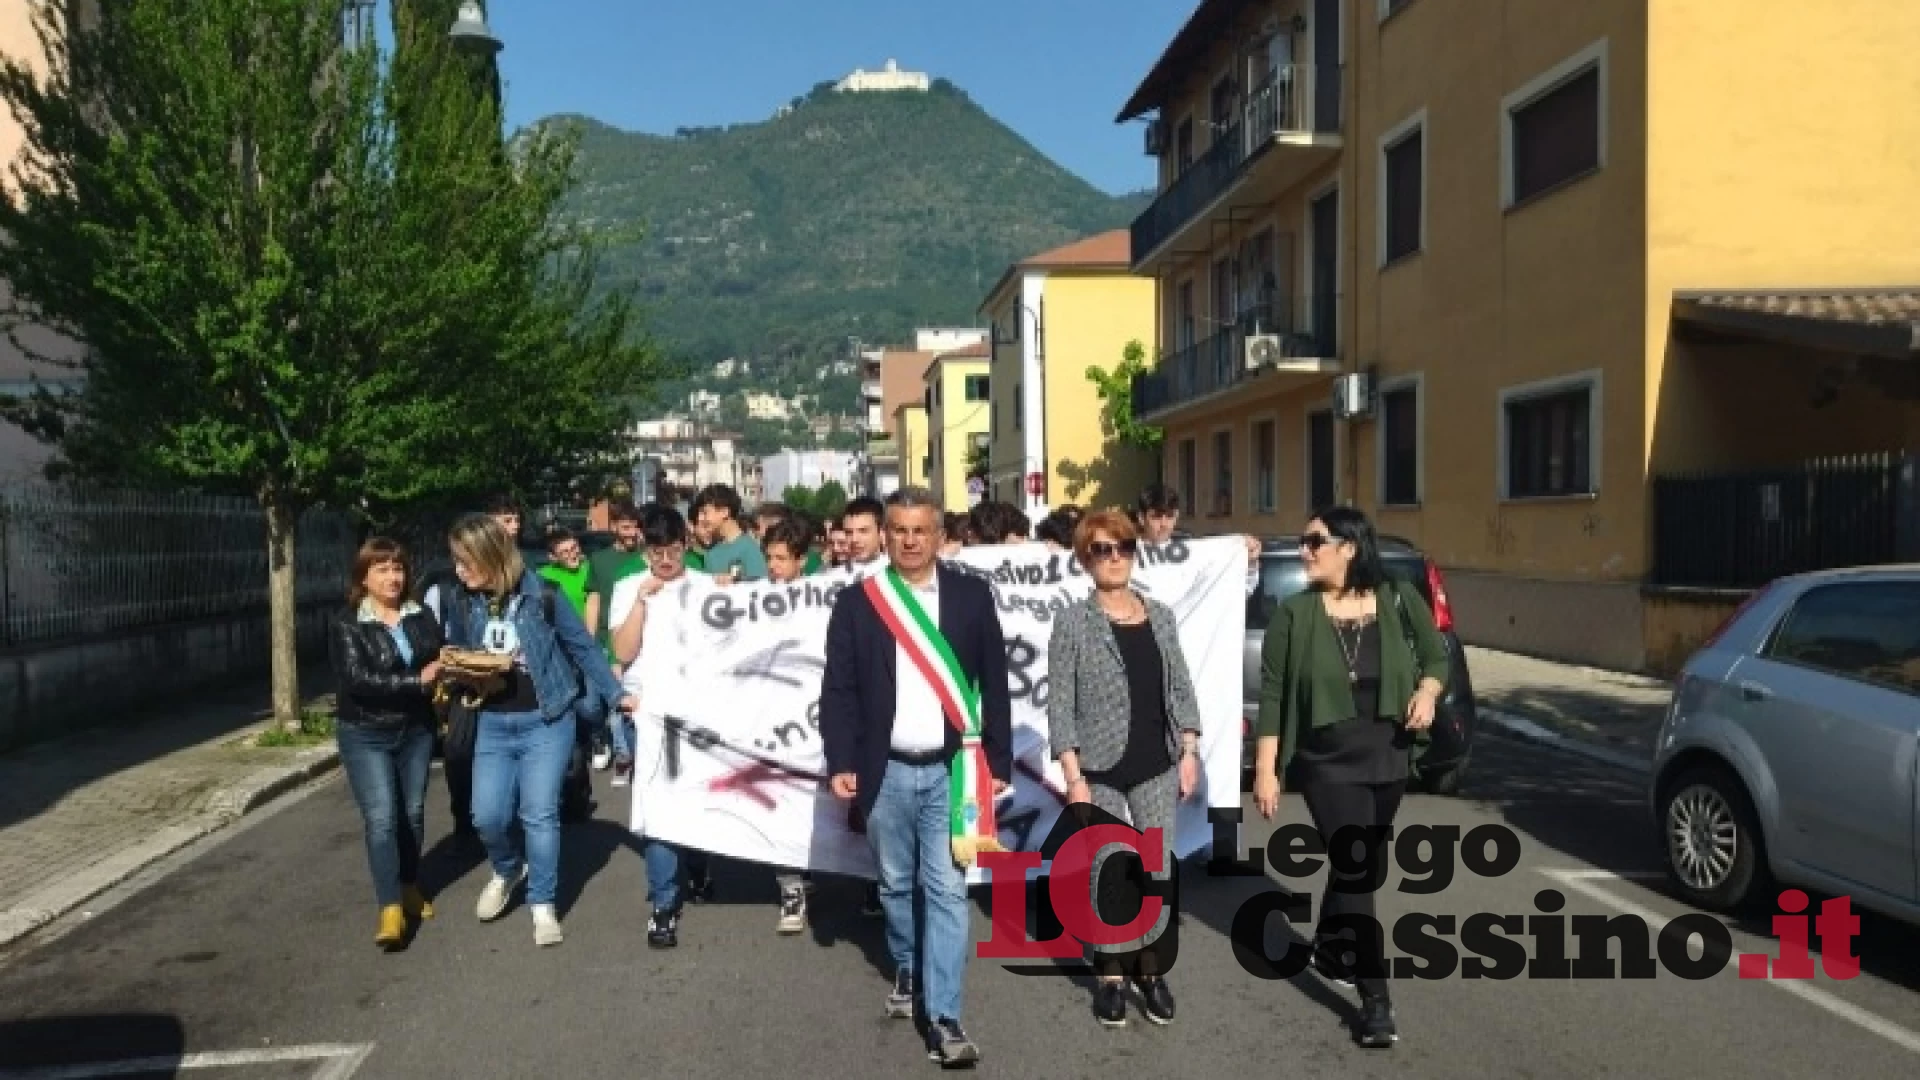 L’Istituto Comprensivo Cassino 1 ha organizzato la "Marcia della Legalità"